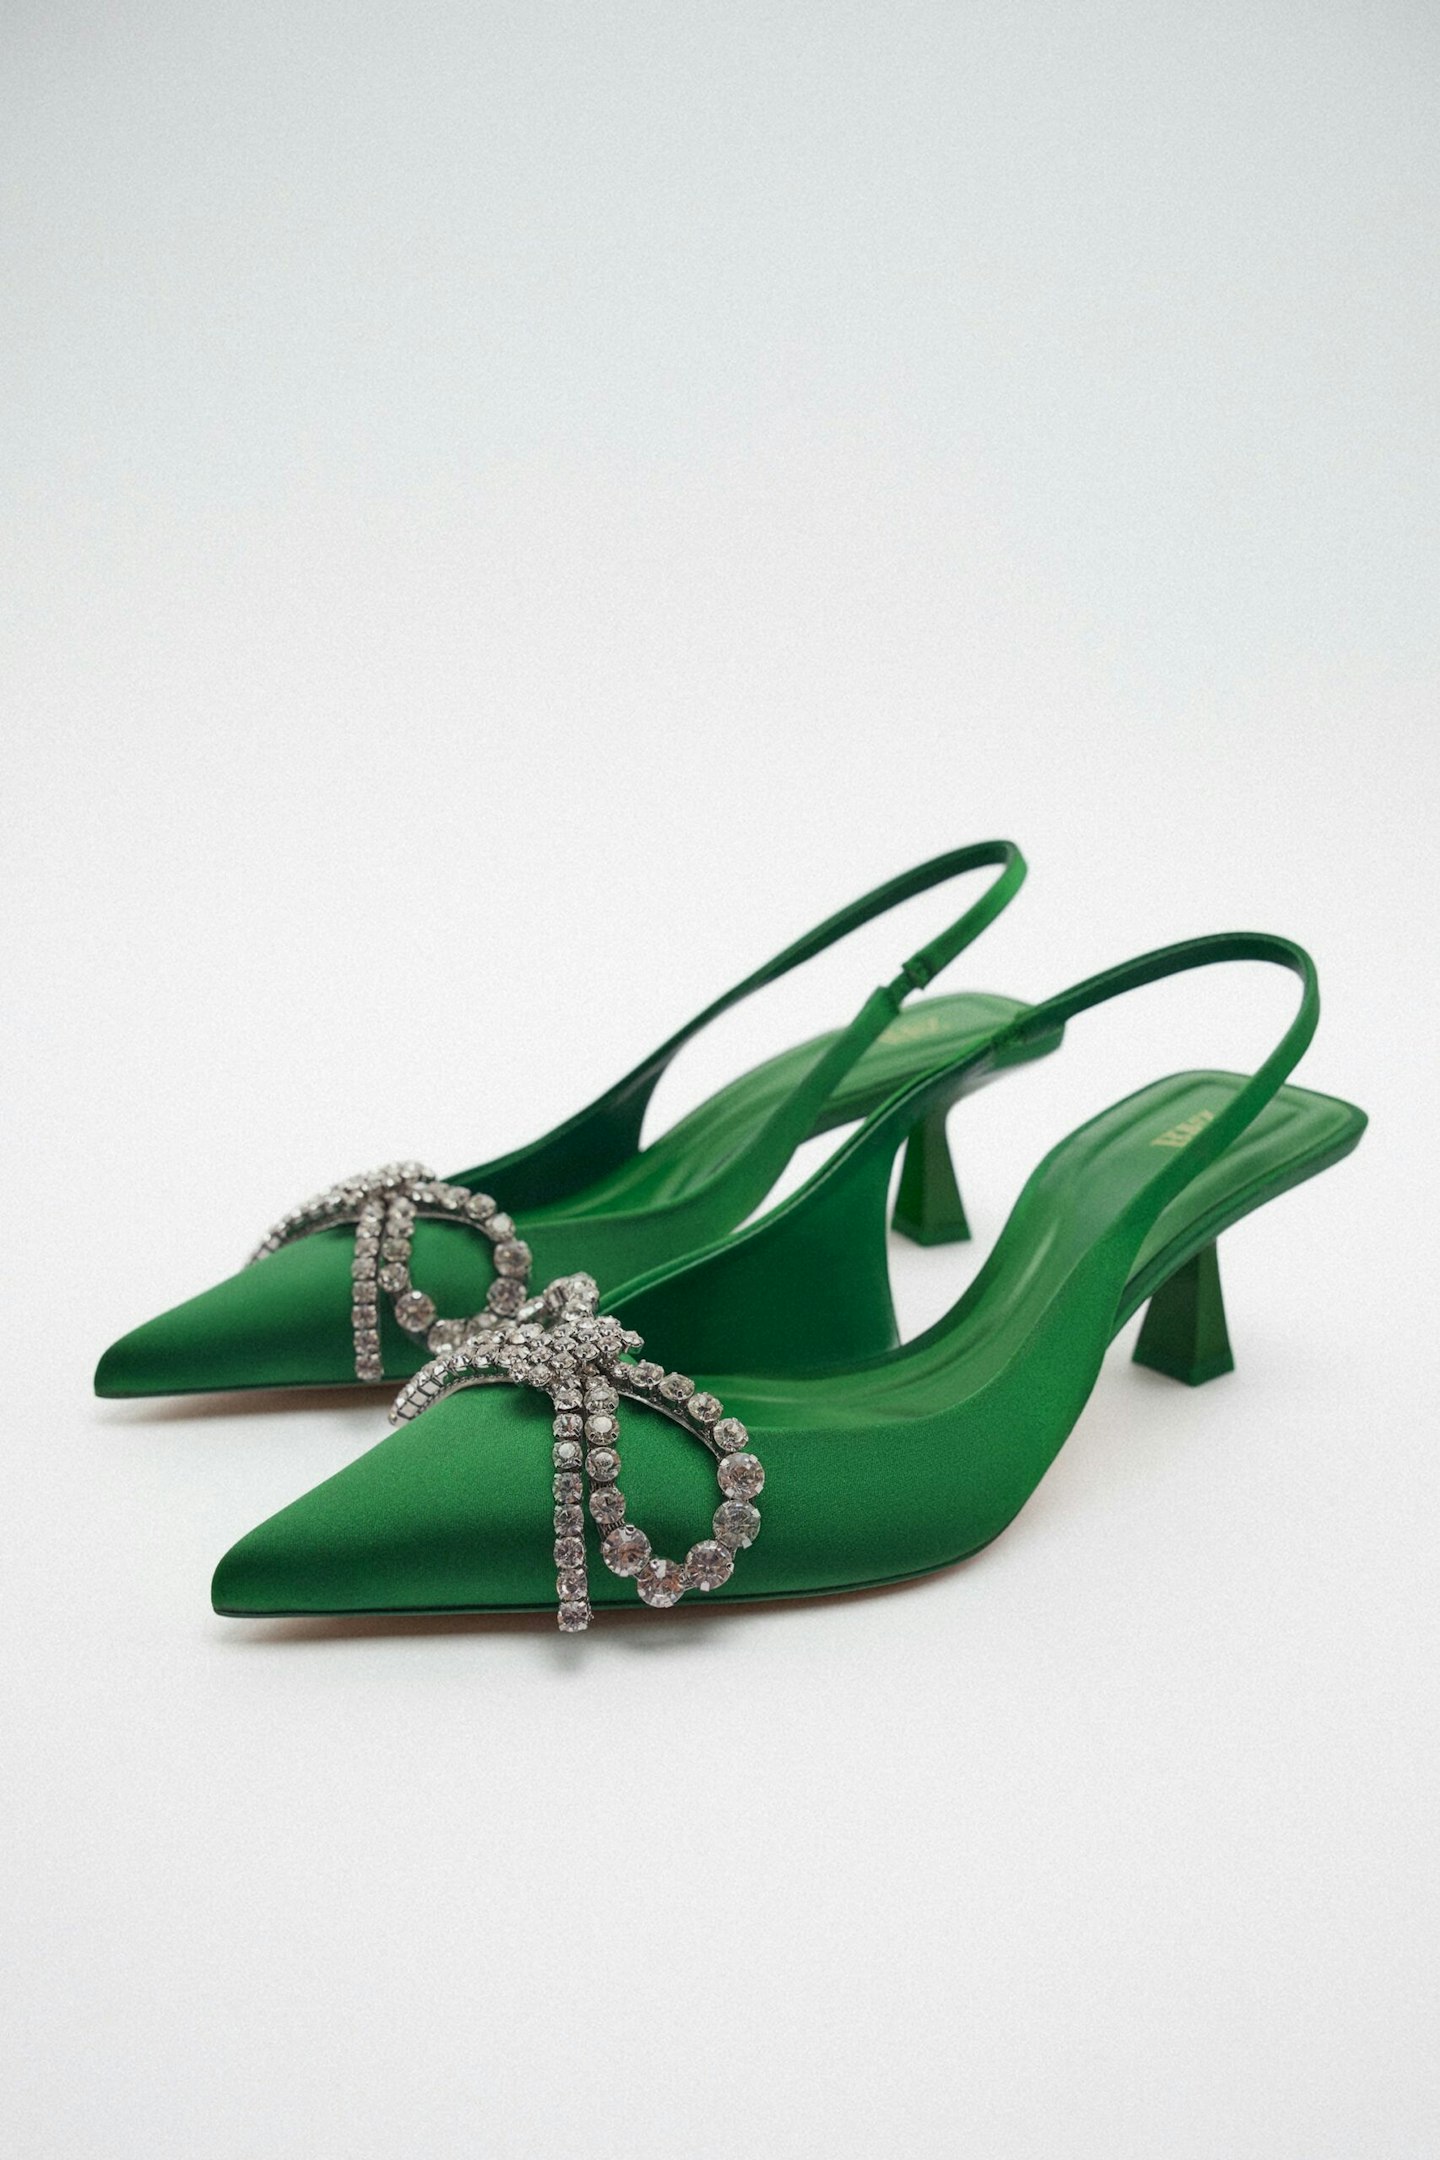 zara heels party shoes high heels